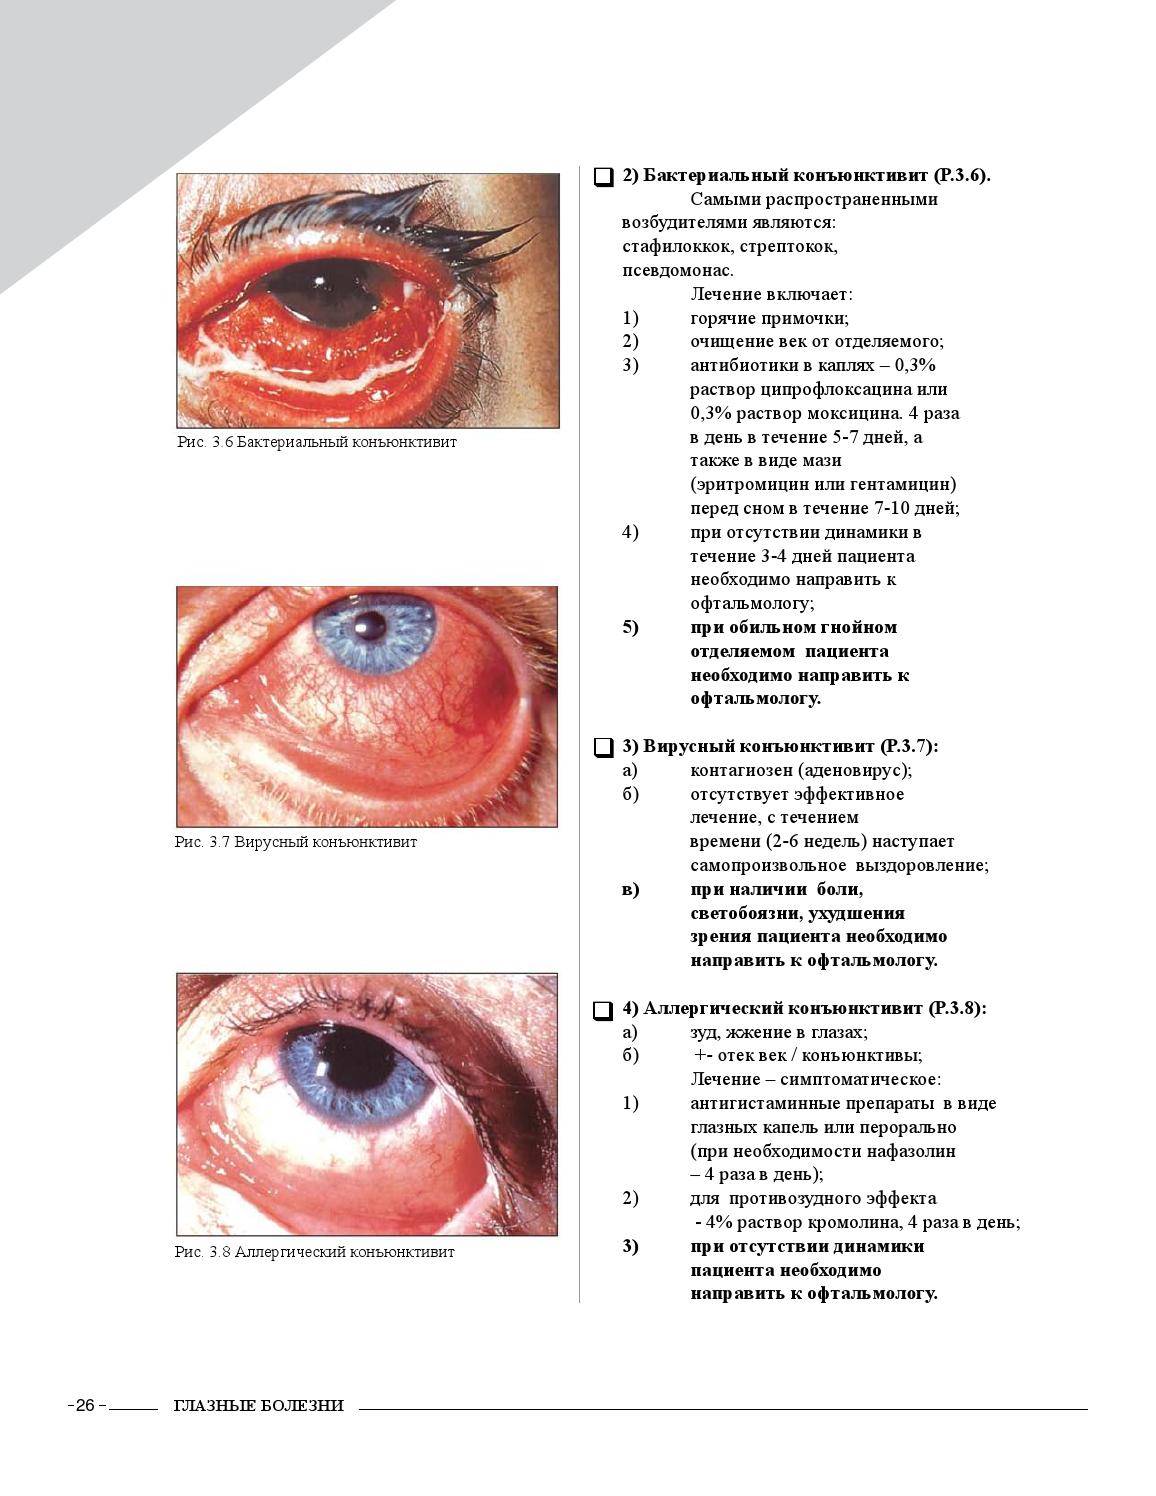 Болезни глаз у человека: список, фото, симптомы и лечение